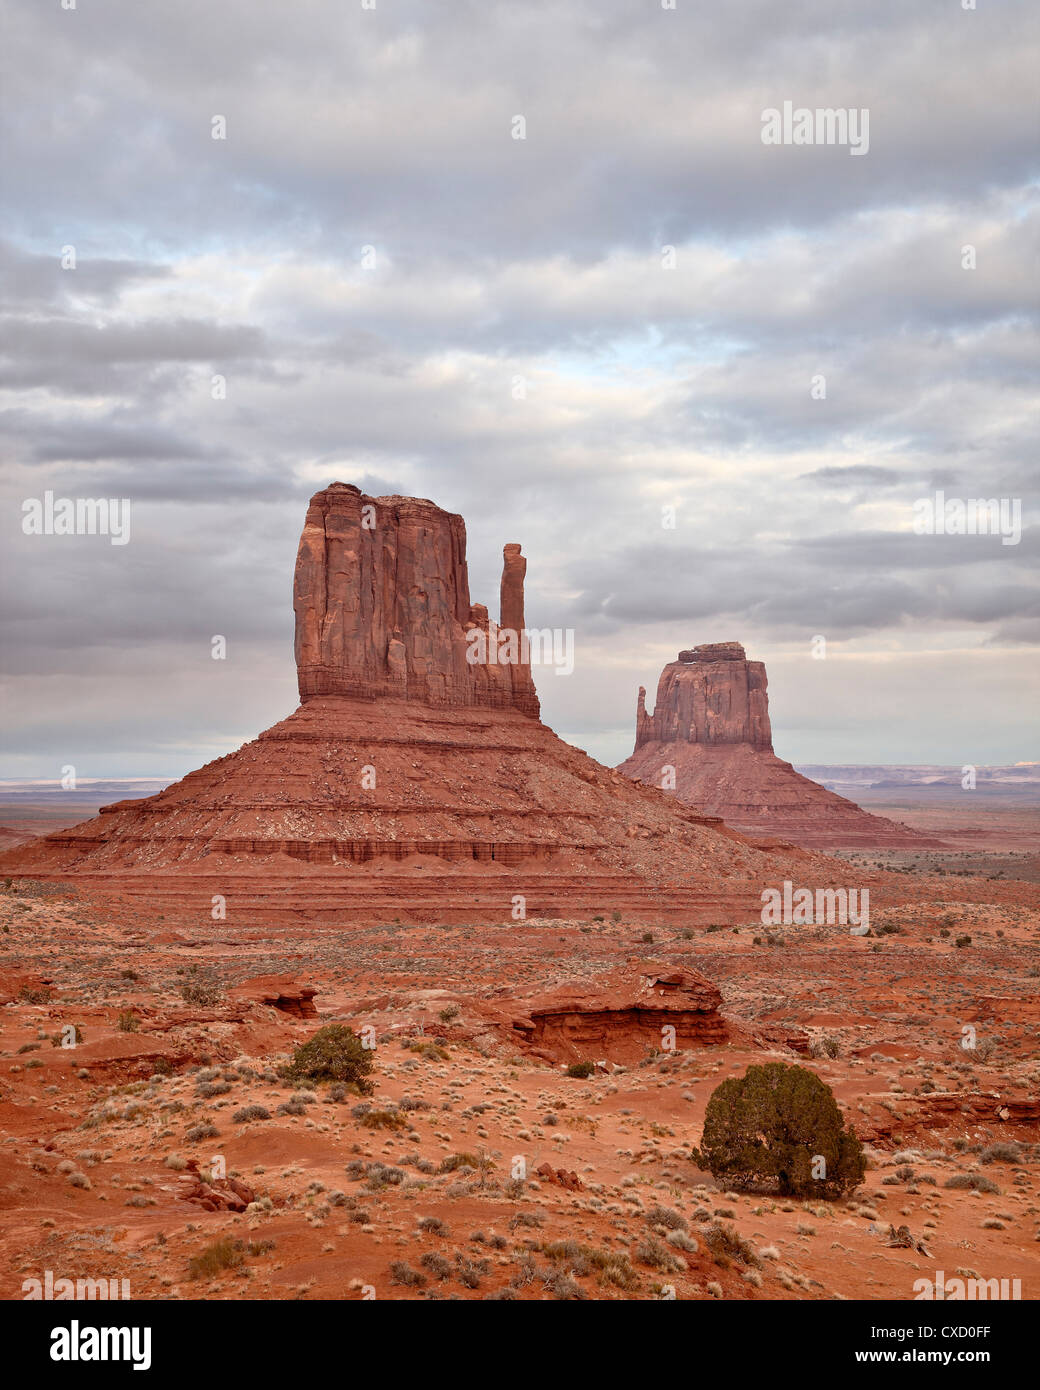 Le muffole, il parco tribale Navajo Monument Valley, Arizona, Stati Uniti d'America, America del Nord Foto Stock